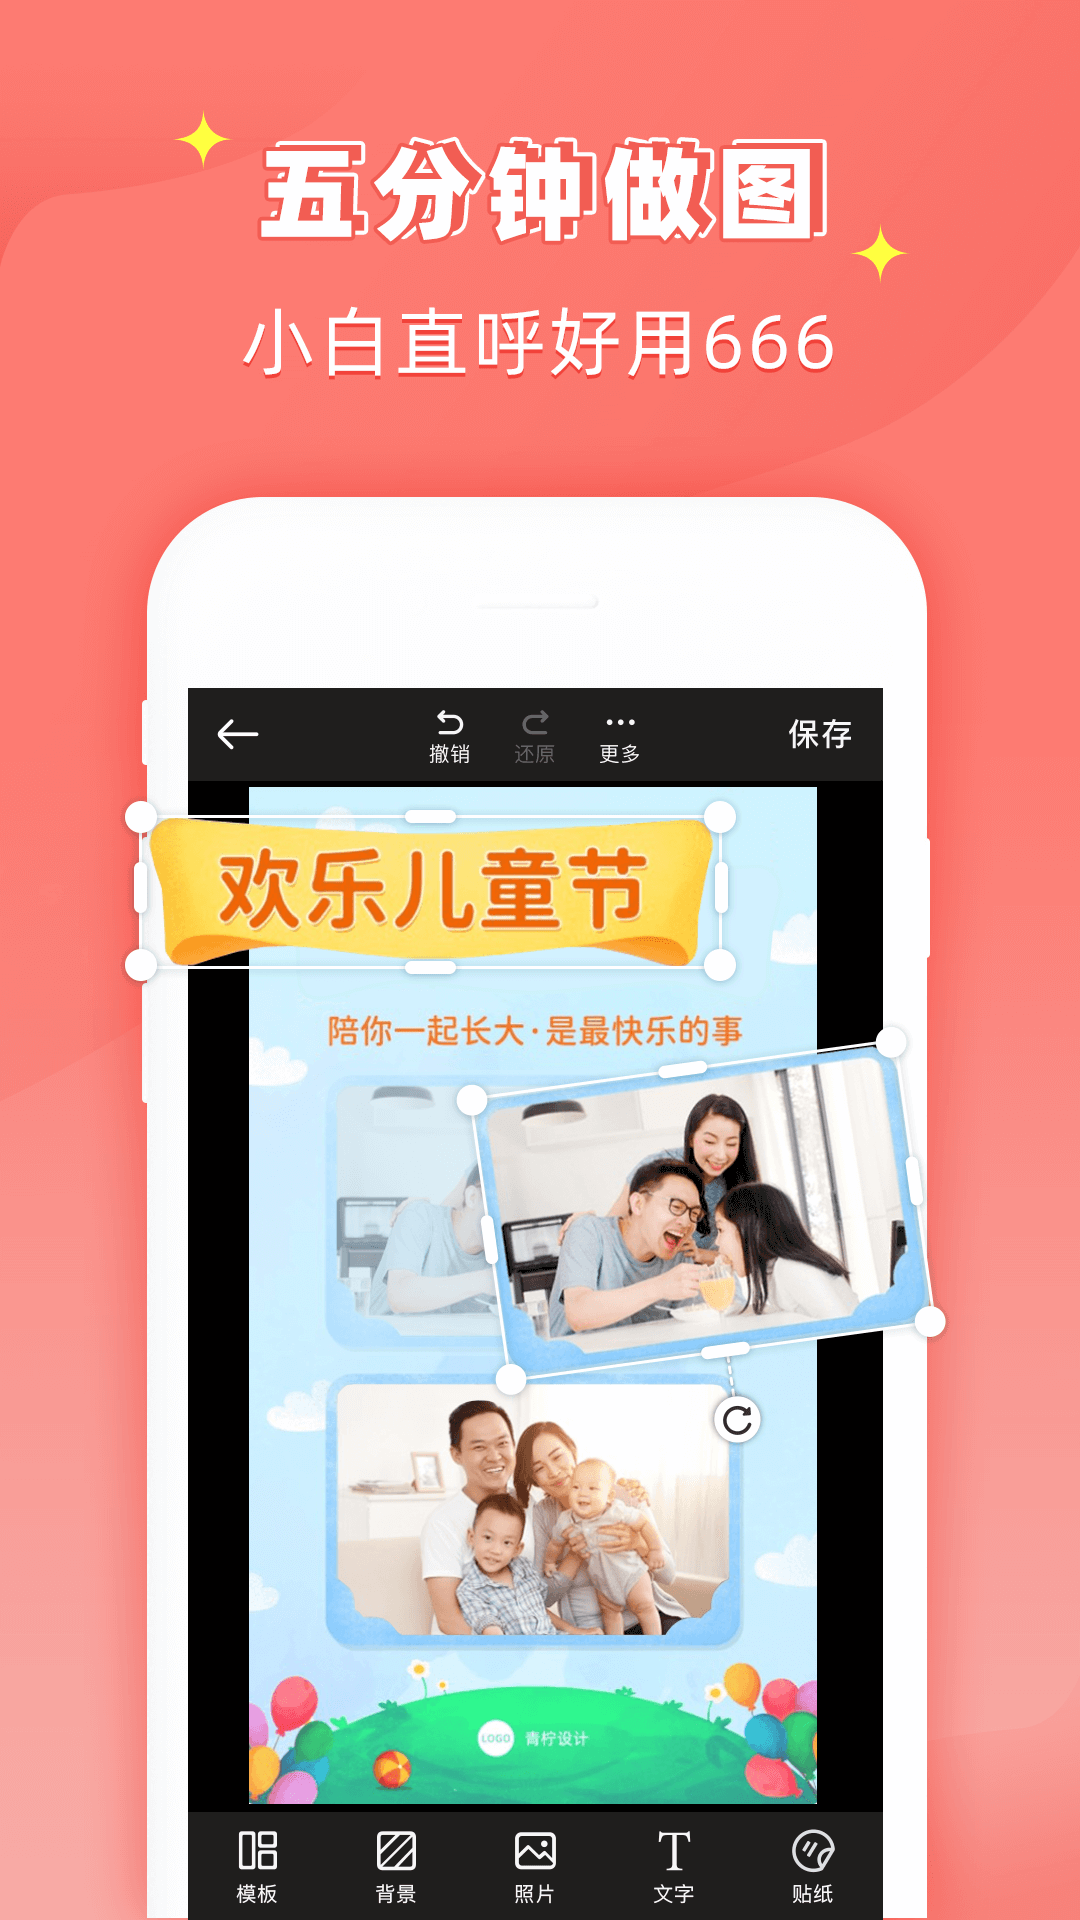 花样文字作图大师app免费安卓版 v1.2.5截图